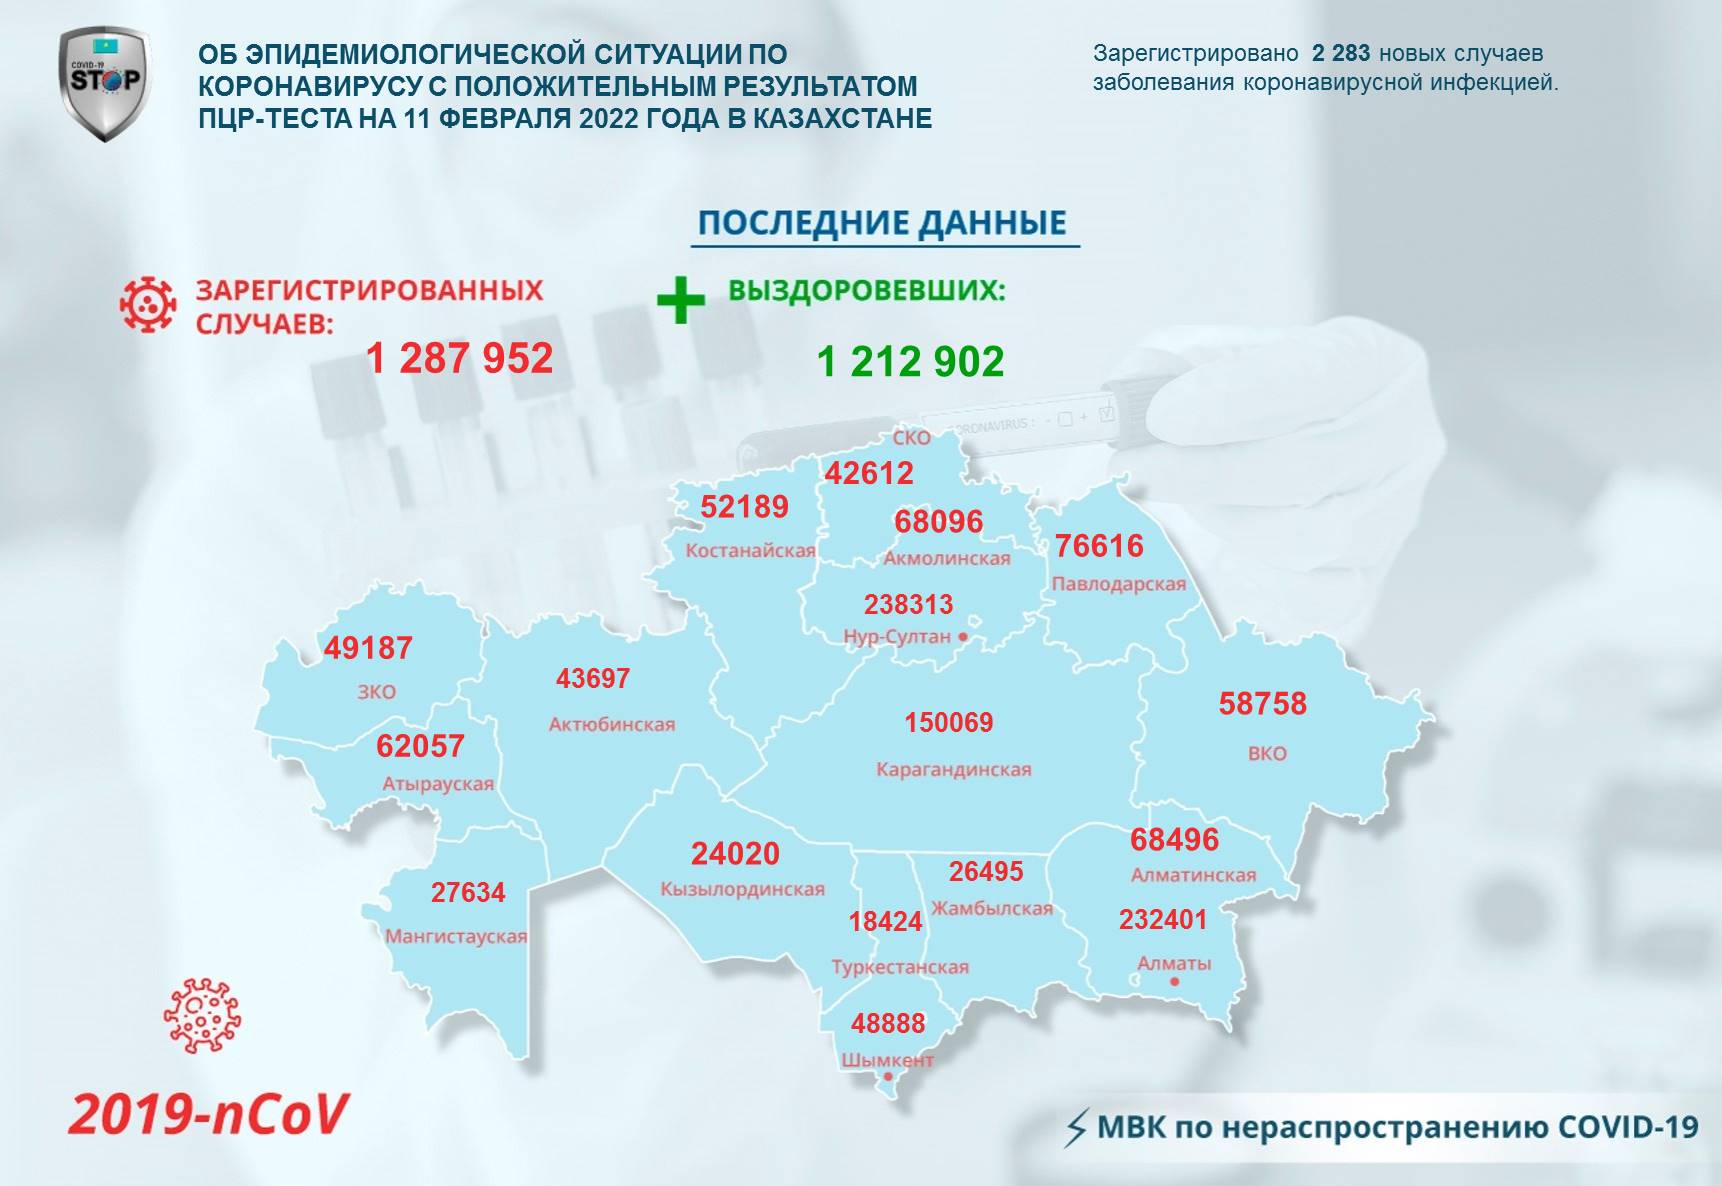 Об эпидемиологической ситуации по коронавирусу с положительным результатом ПЦР-теста на 11 февраля 2022  года в Казахстане